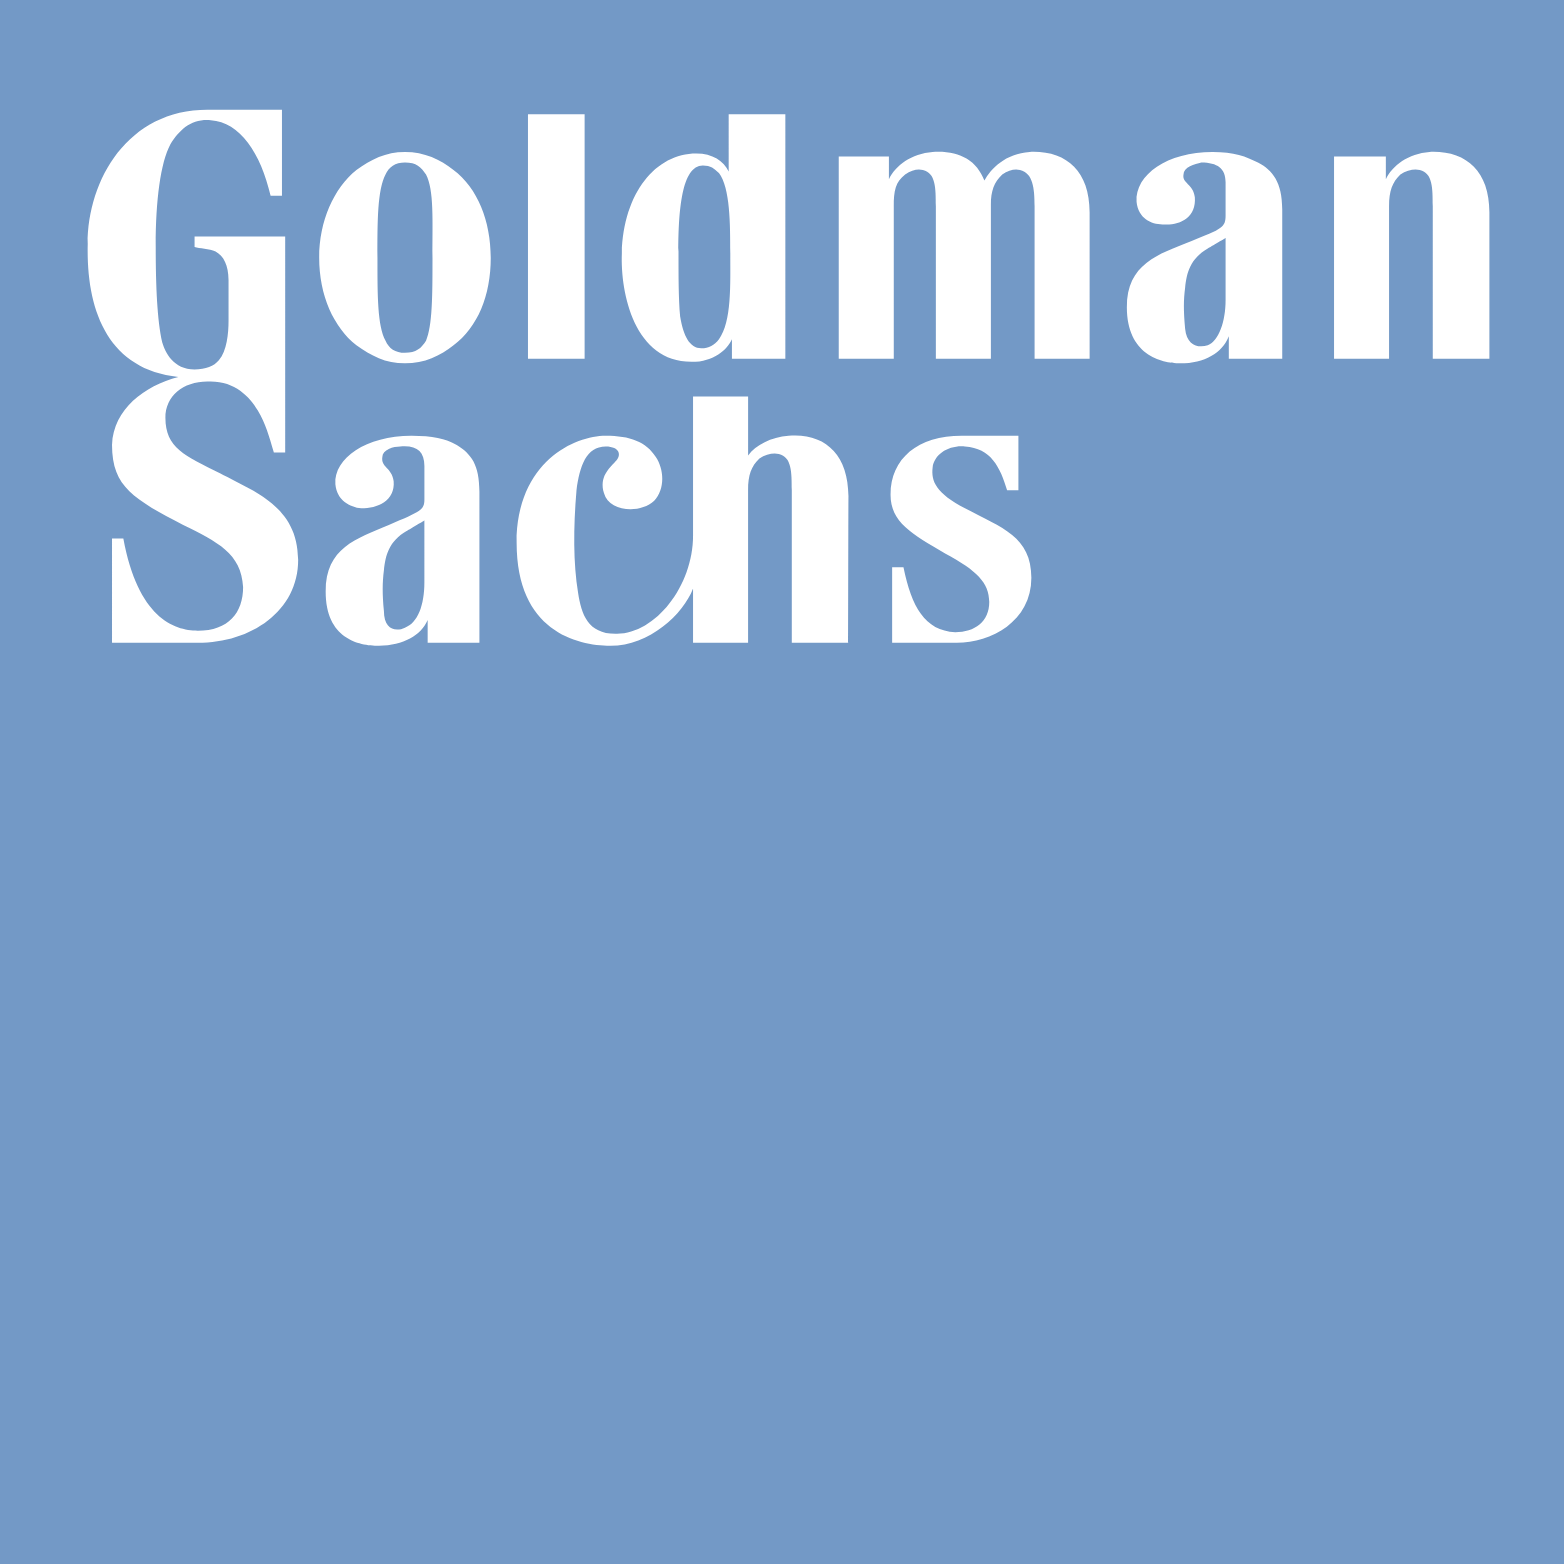 Goldman Sachs logo (PNG transparent)